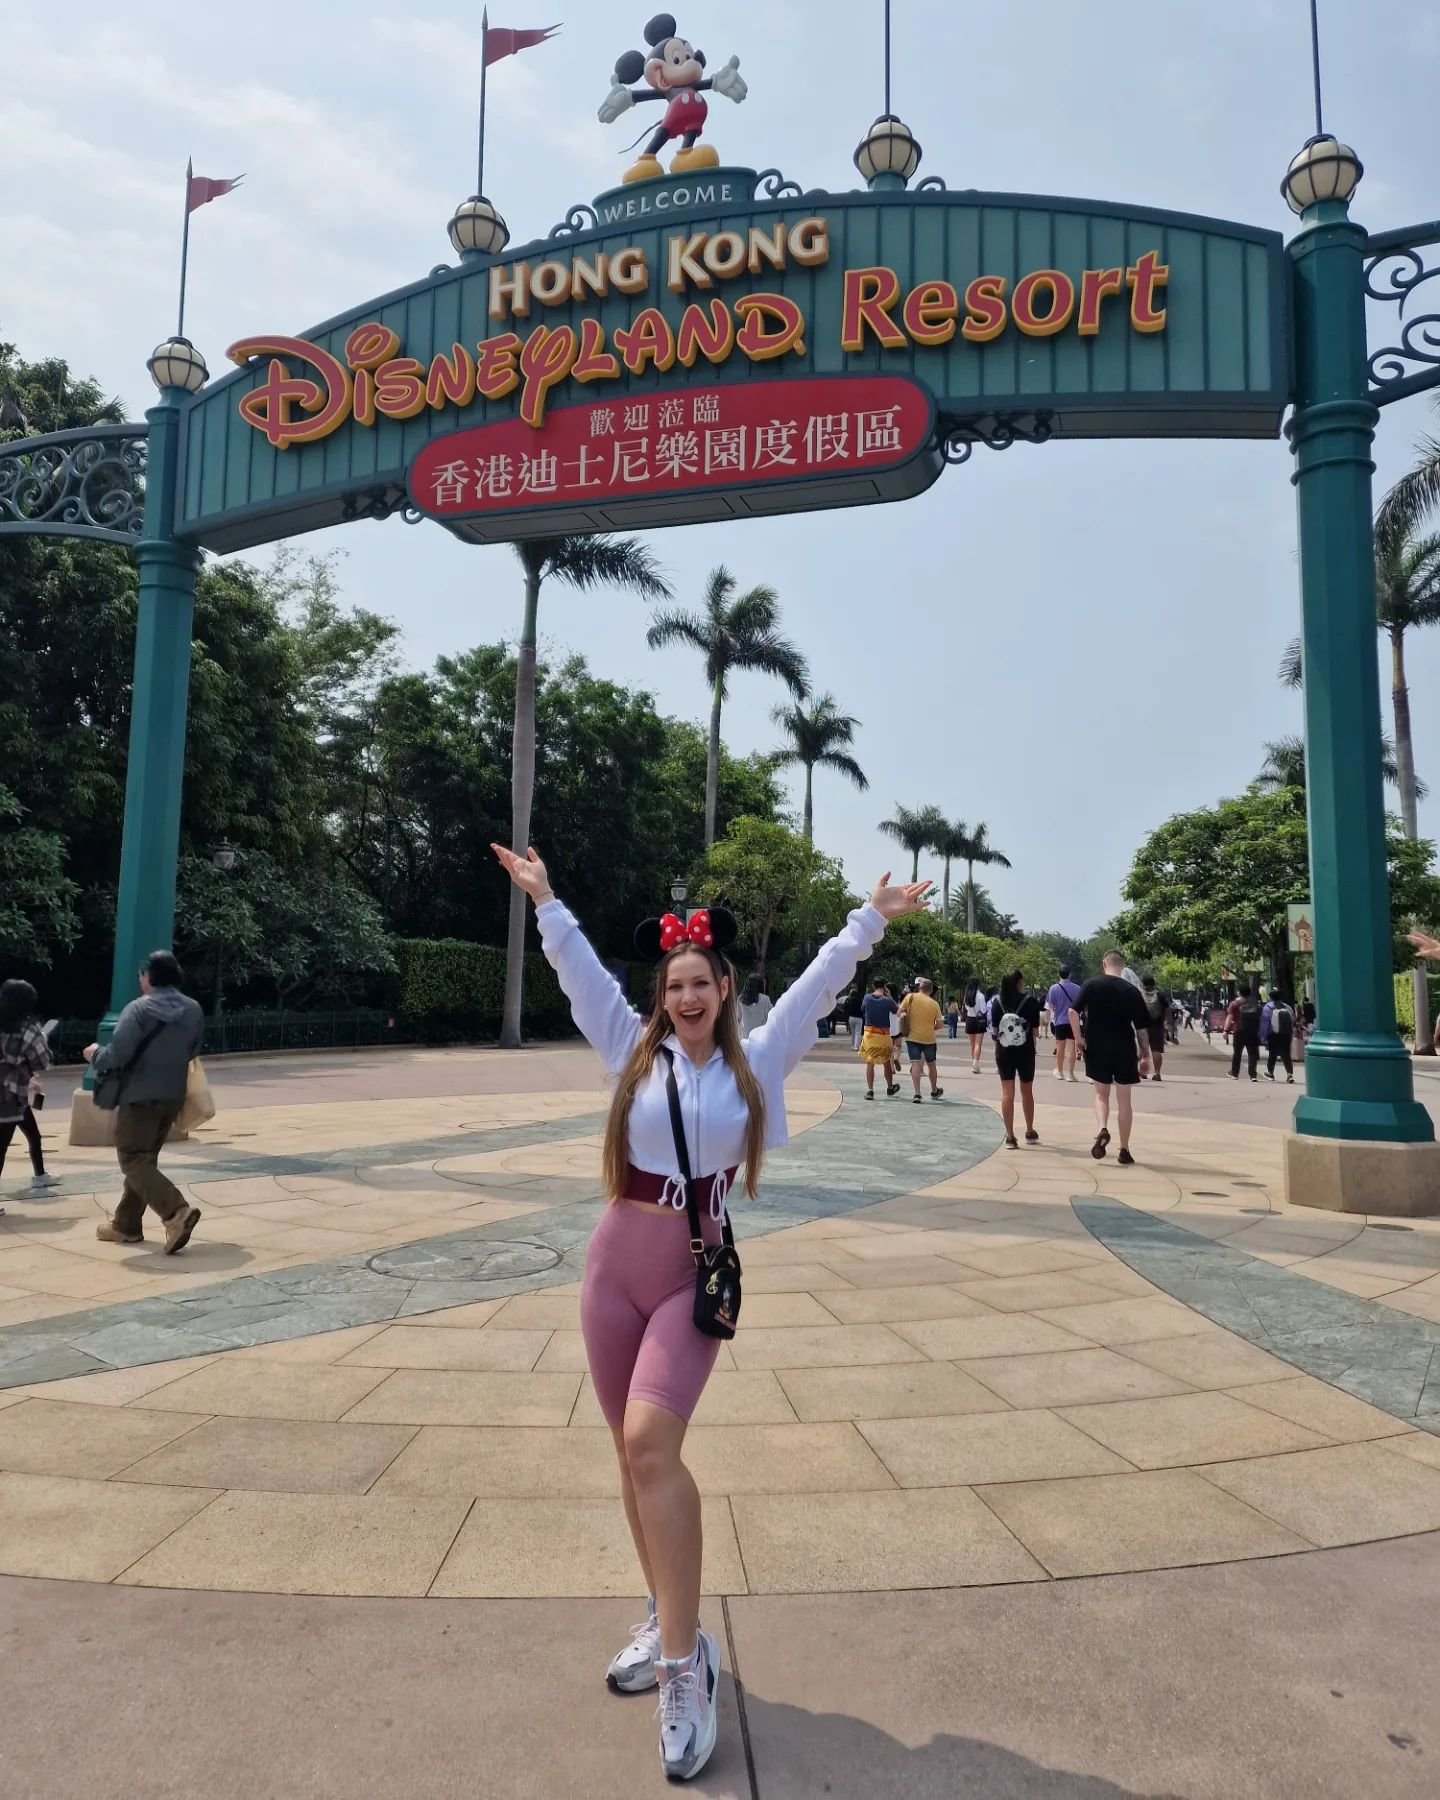 Disneyland Hong Kong ✨️ 

#disneyland #disneylandhongkong #hongkong